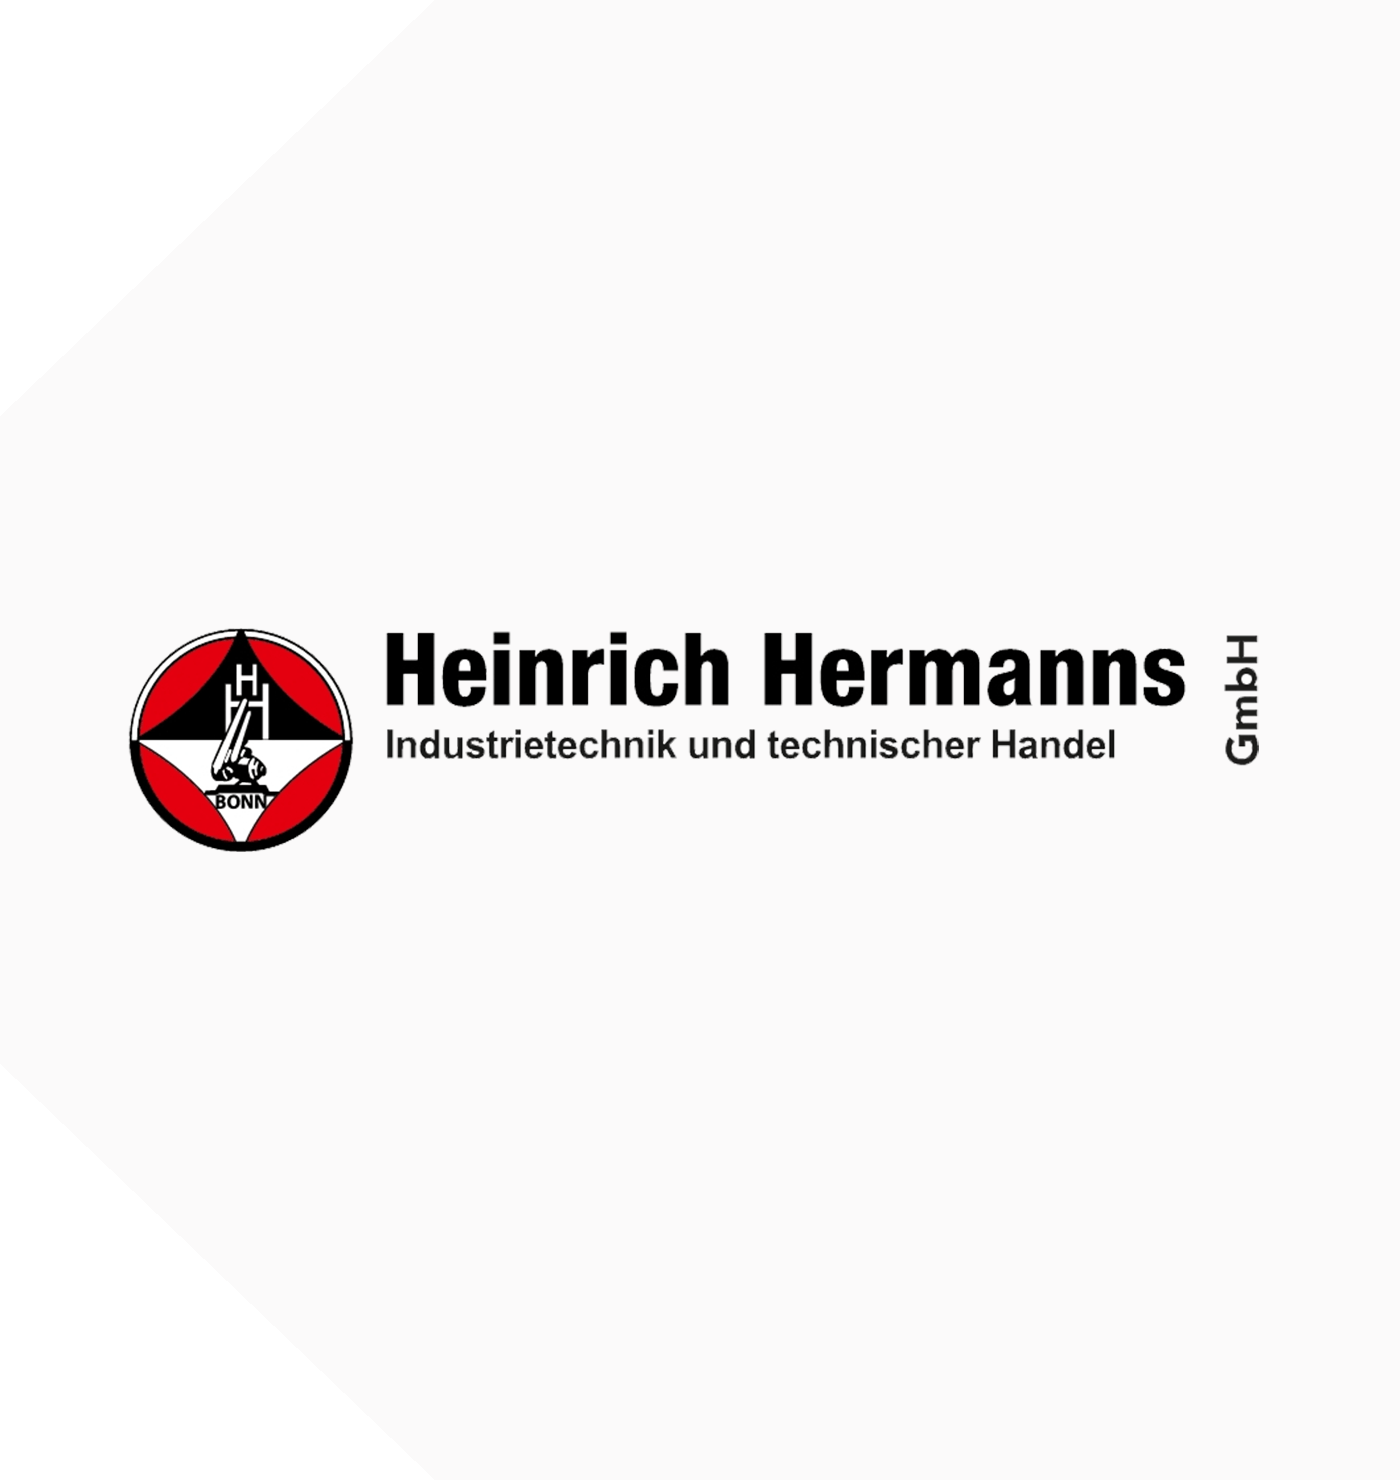 Heinrich Hermanns GmbH